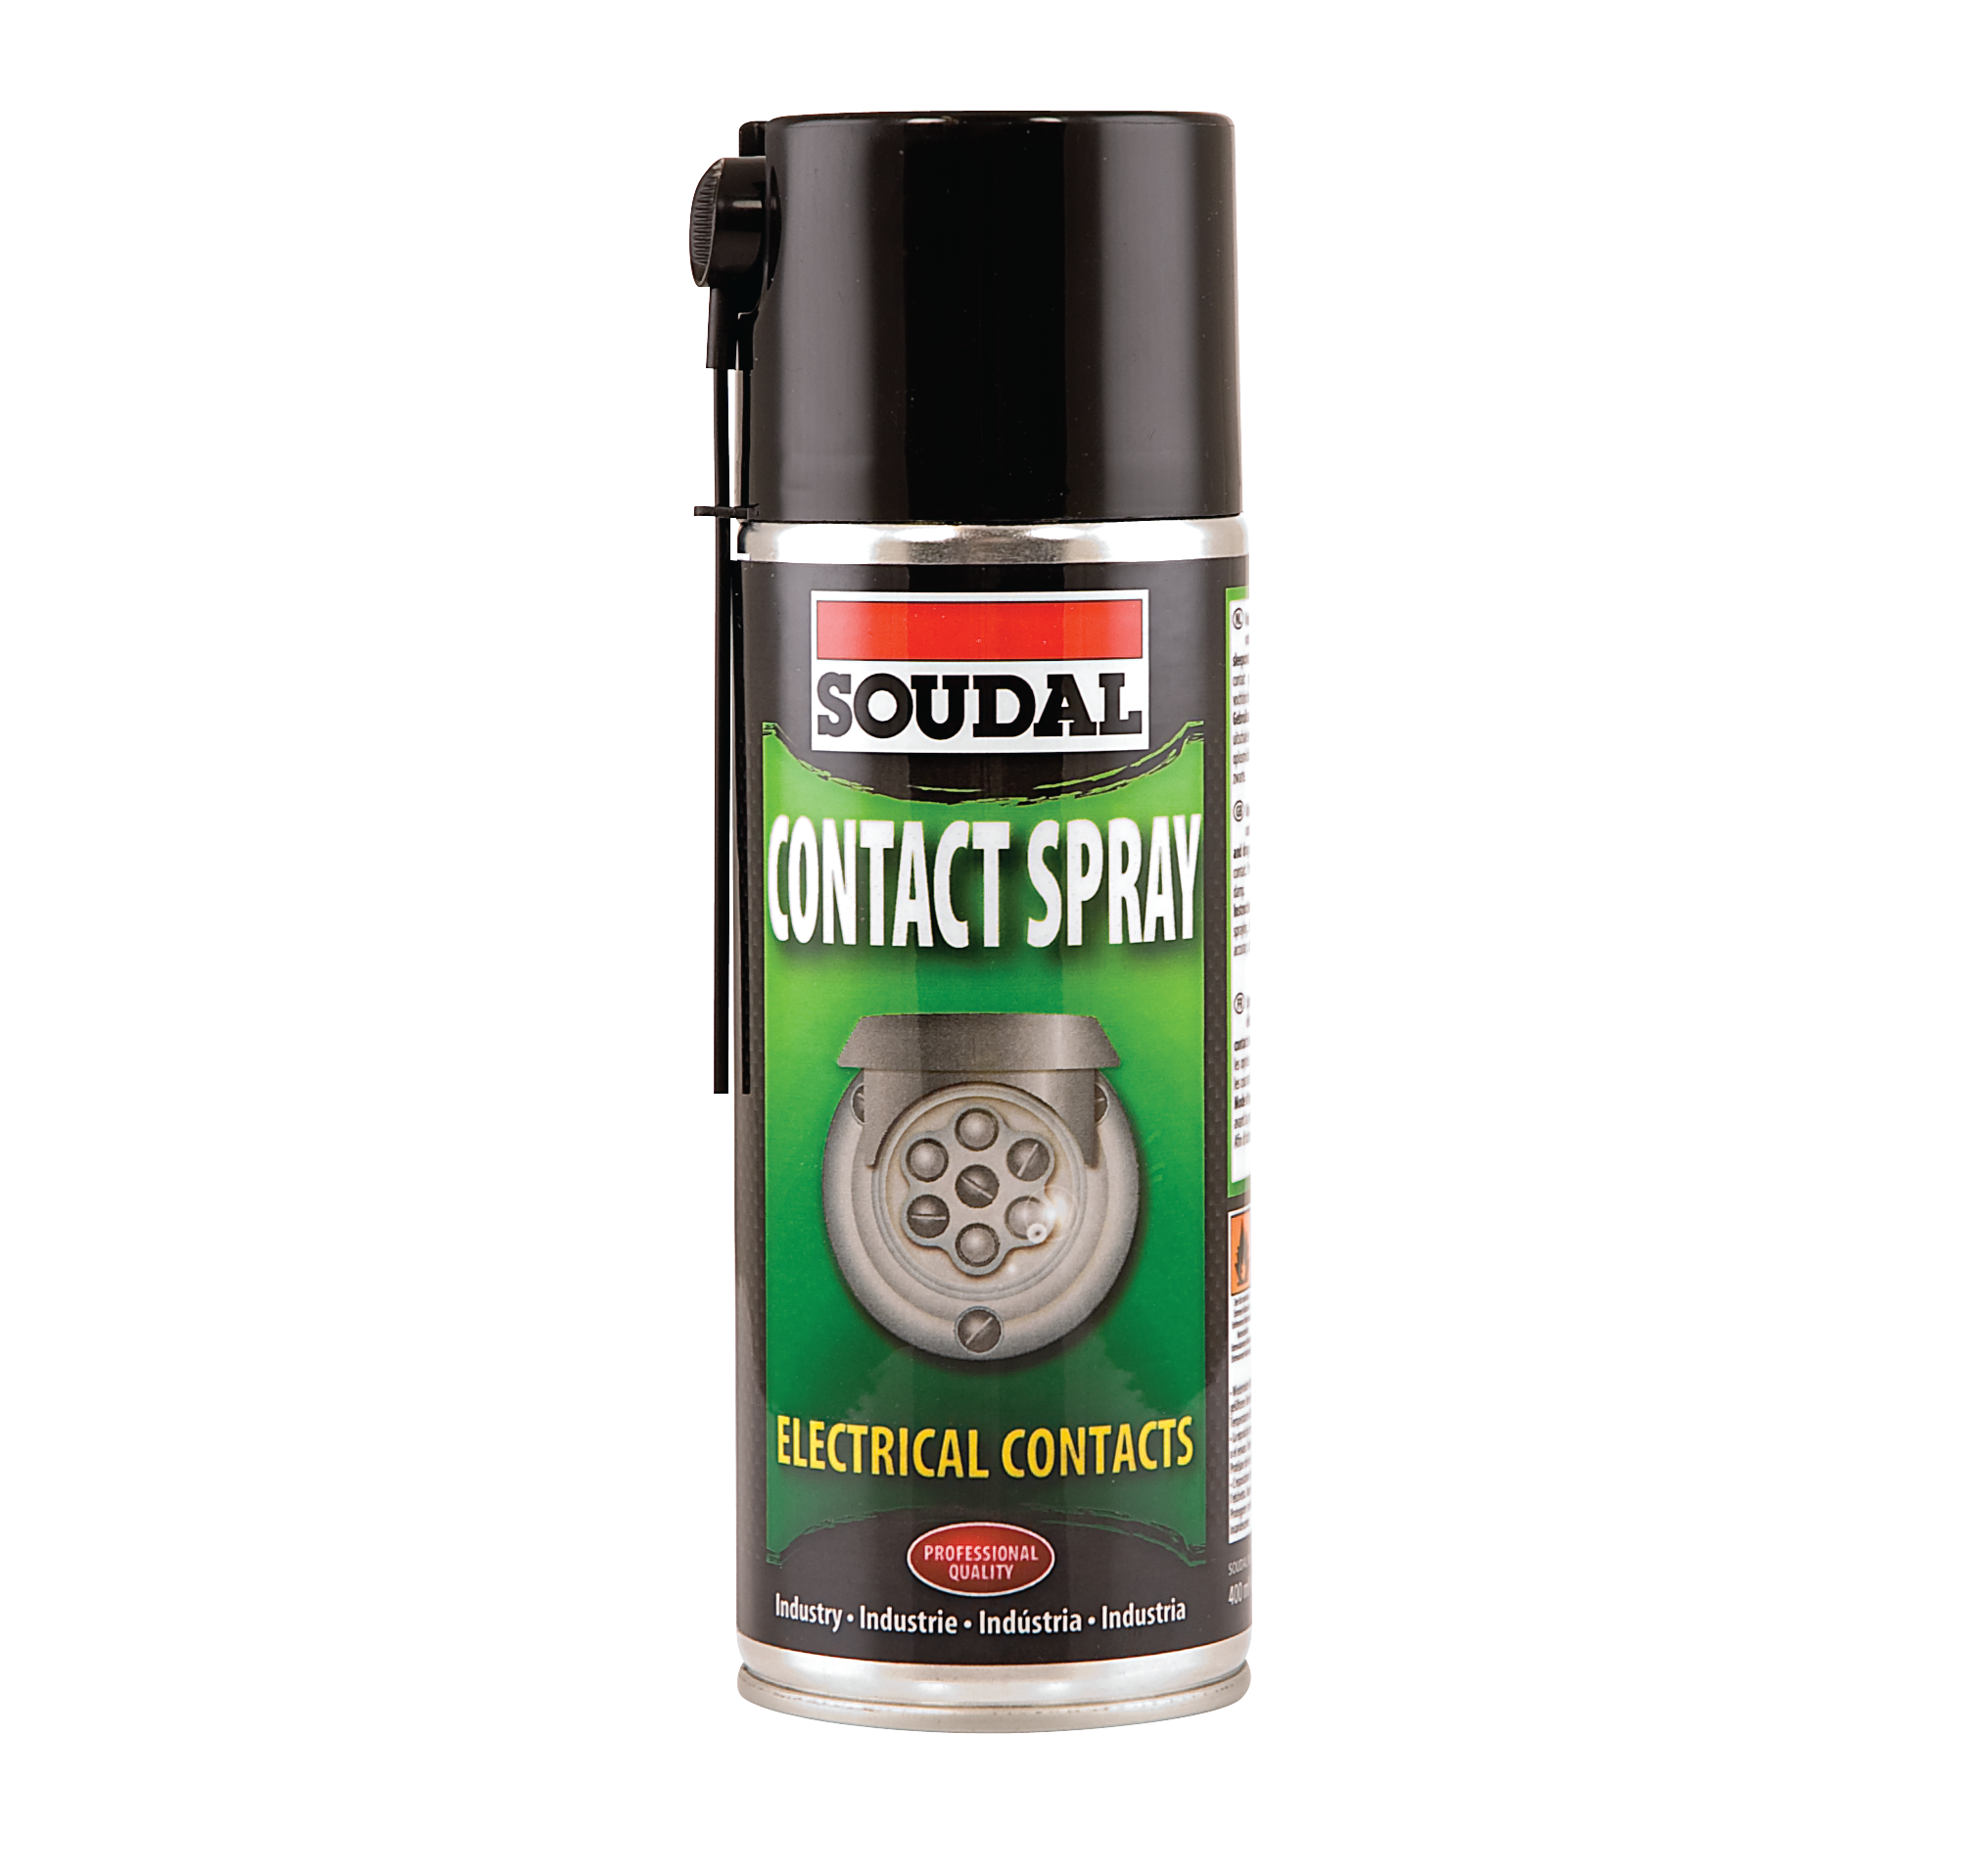 Soudal Contact Spray спрей для электрических контактов на основе минерального масла 400мл